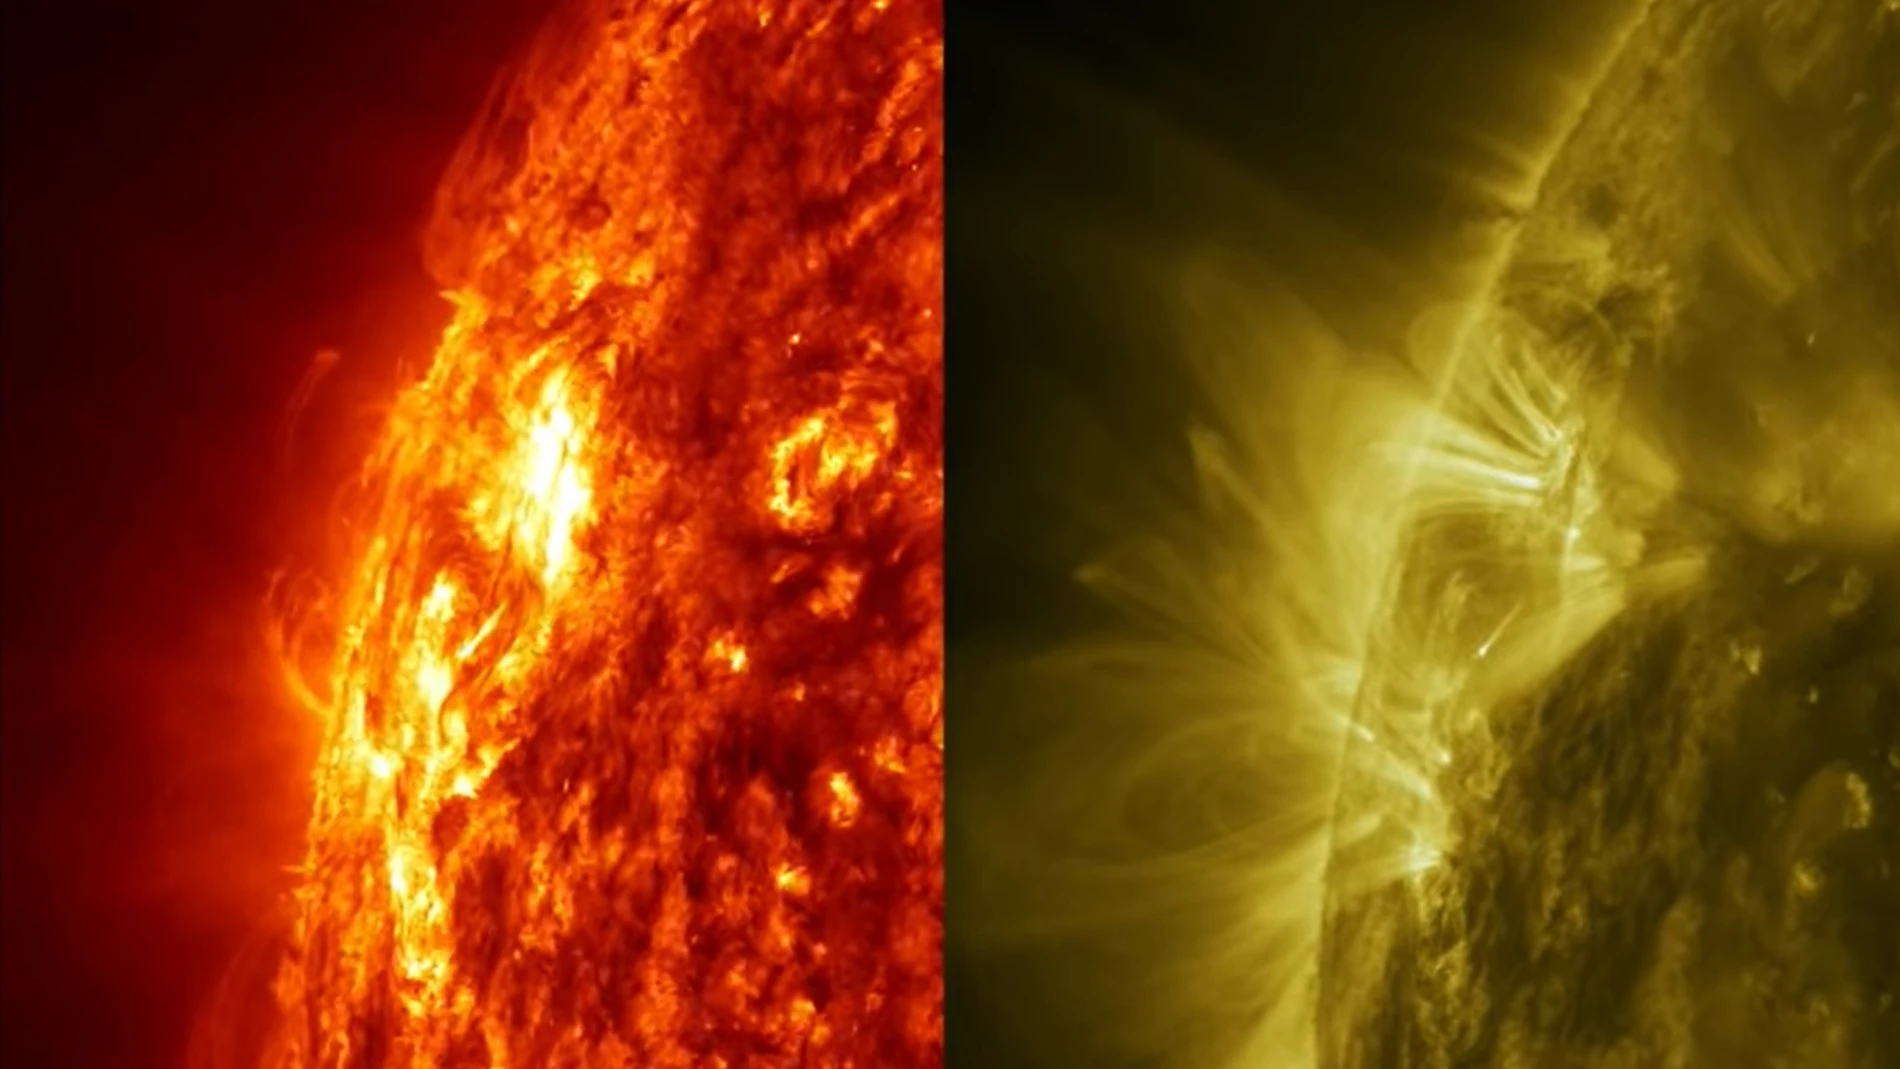 Nuevo tipo de explosión solar observada por la NASA